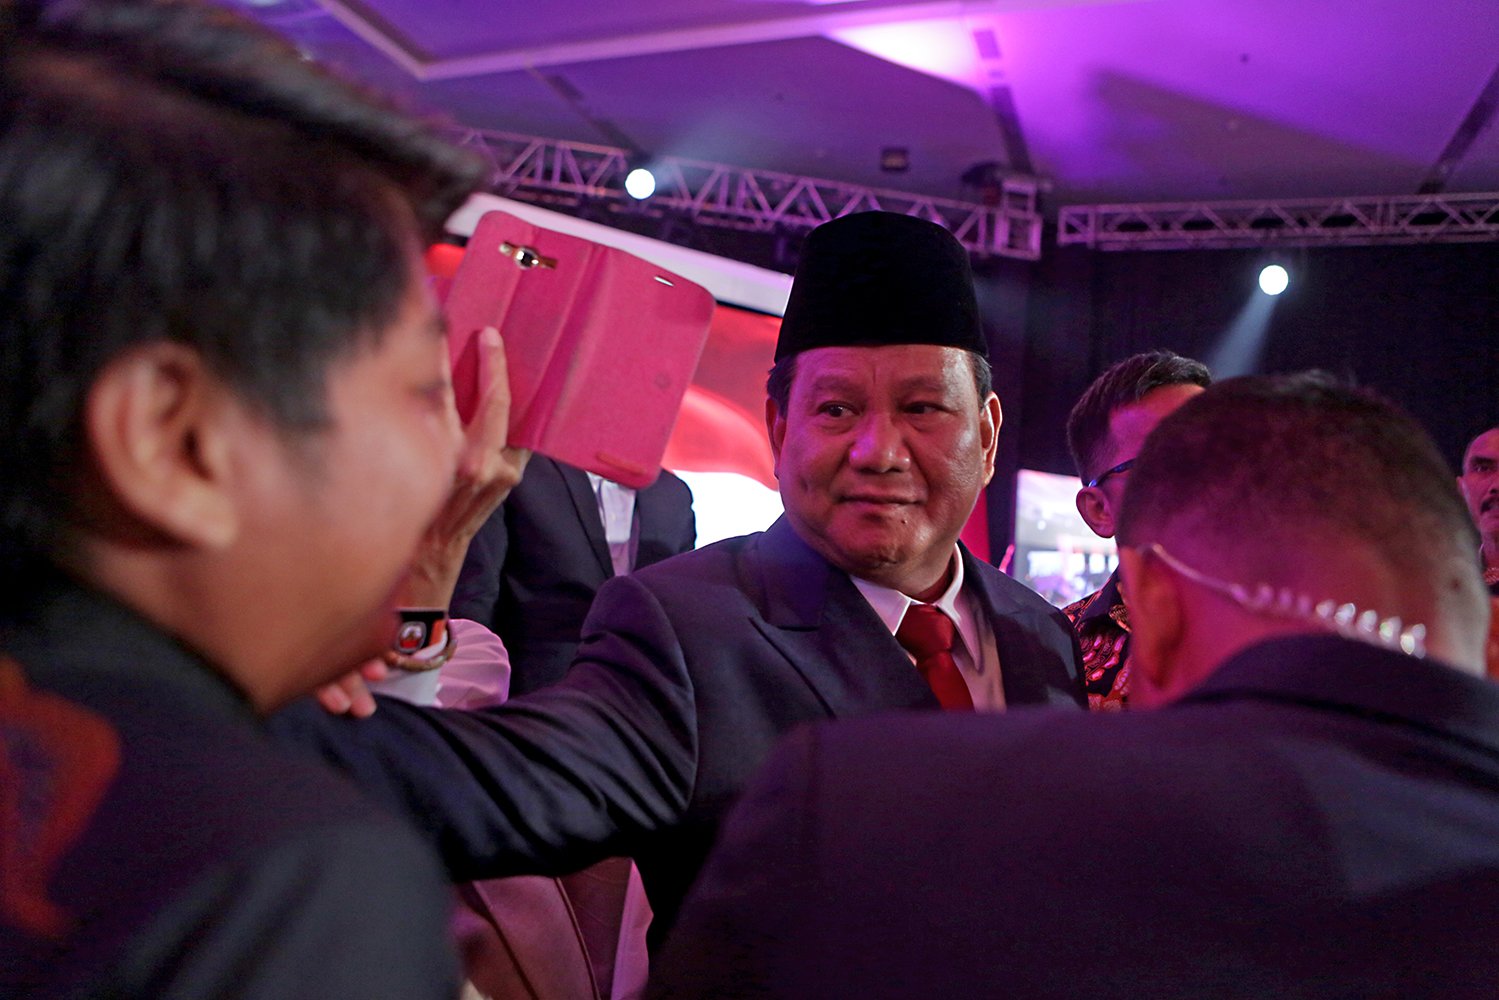 Prabowo menyoroti soal kepastian hukum, penegakan institusi hukum seperti hakim, jaksa, dan polisi sebagai syarat bagi suatu negara yang berhasil. Prabowo juga menjanjikan gaji berlipat ganda untuk hakim, jaksa, dan polisi, berharap akan lahir institusi hukum yang tidak dapat dikorupsi. 